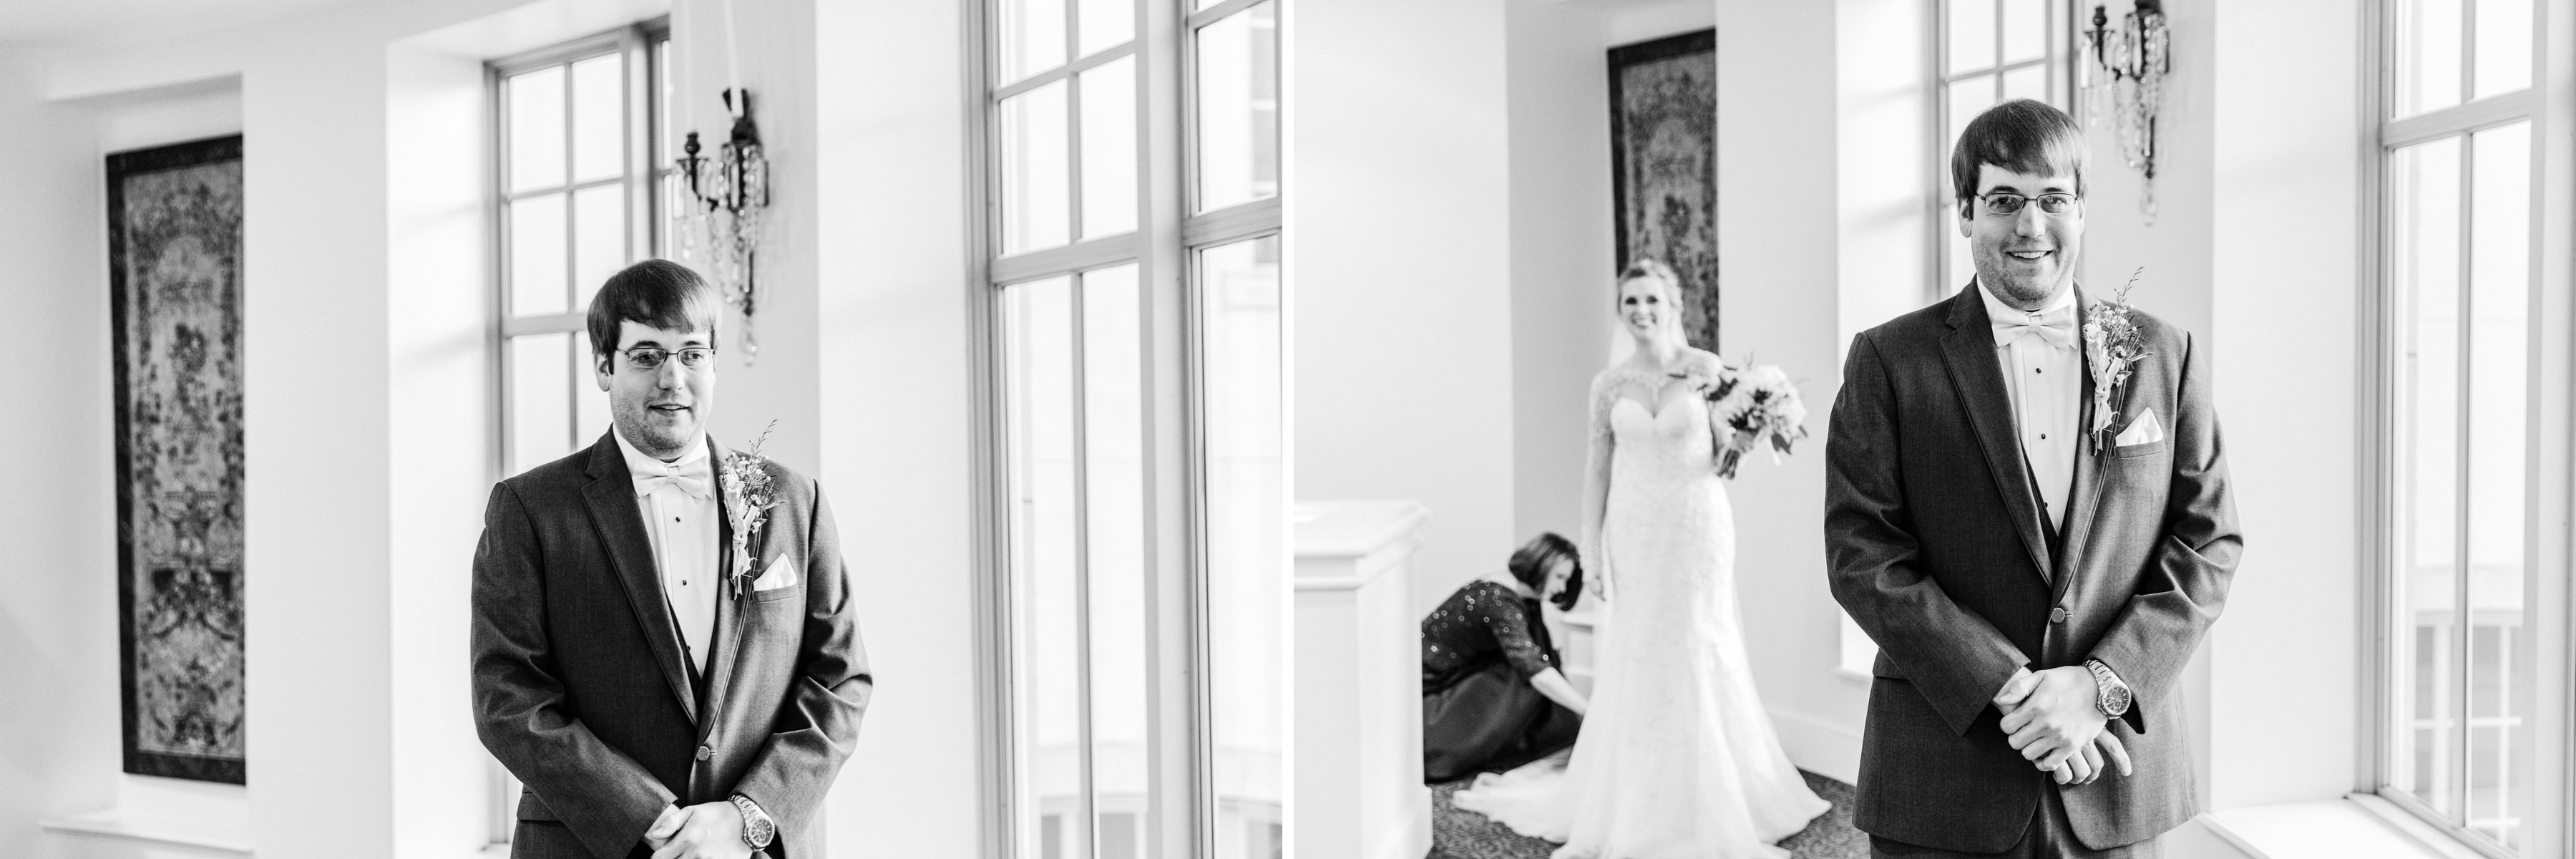 OAKLEY_WEDDING_MONTGOMERY_ALABAMA_WEDDING_PHOTOGRAPHY_32